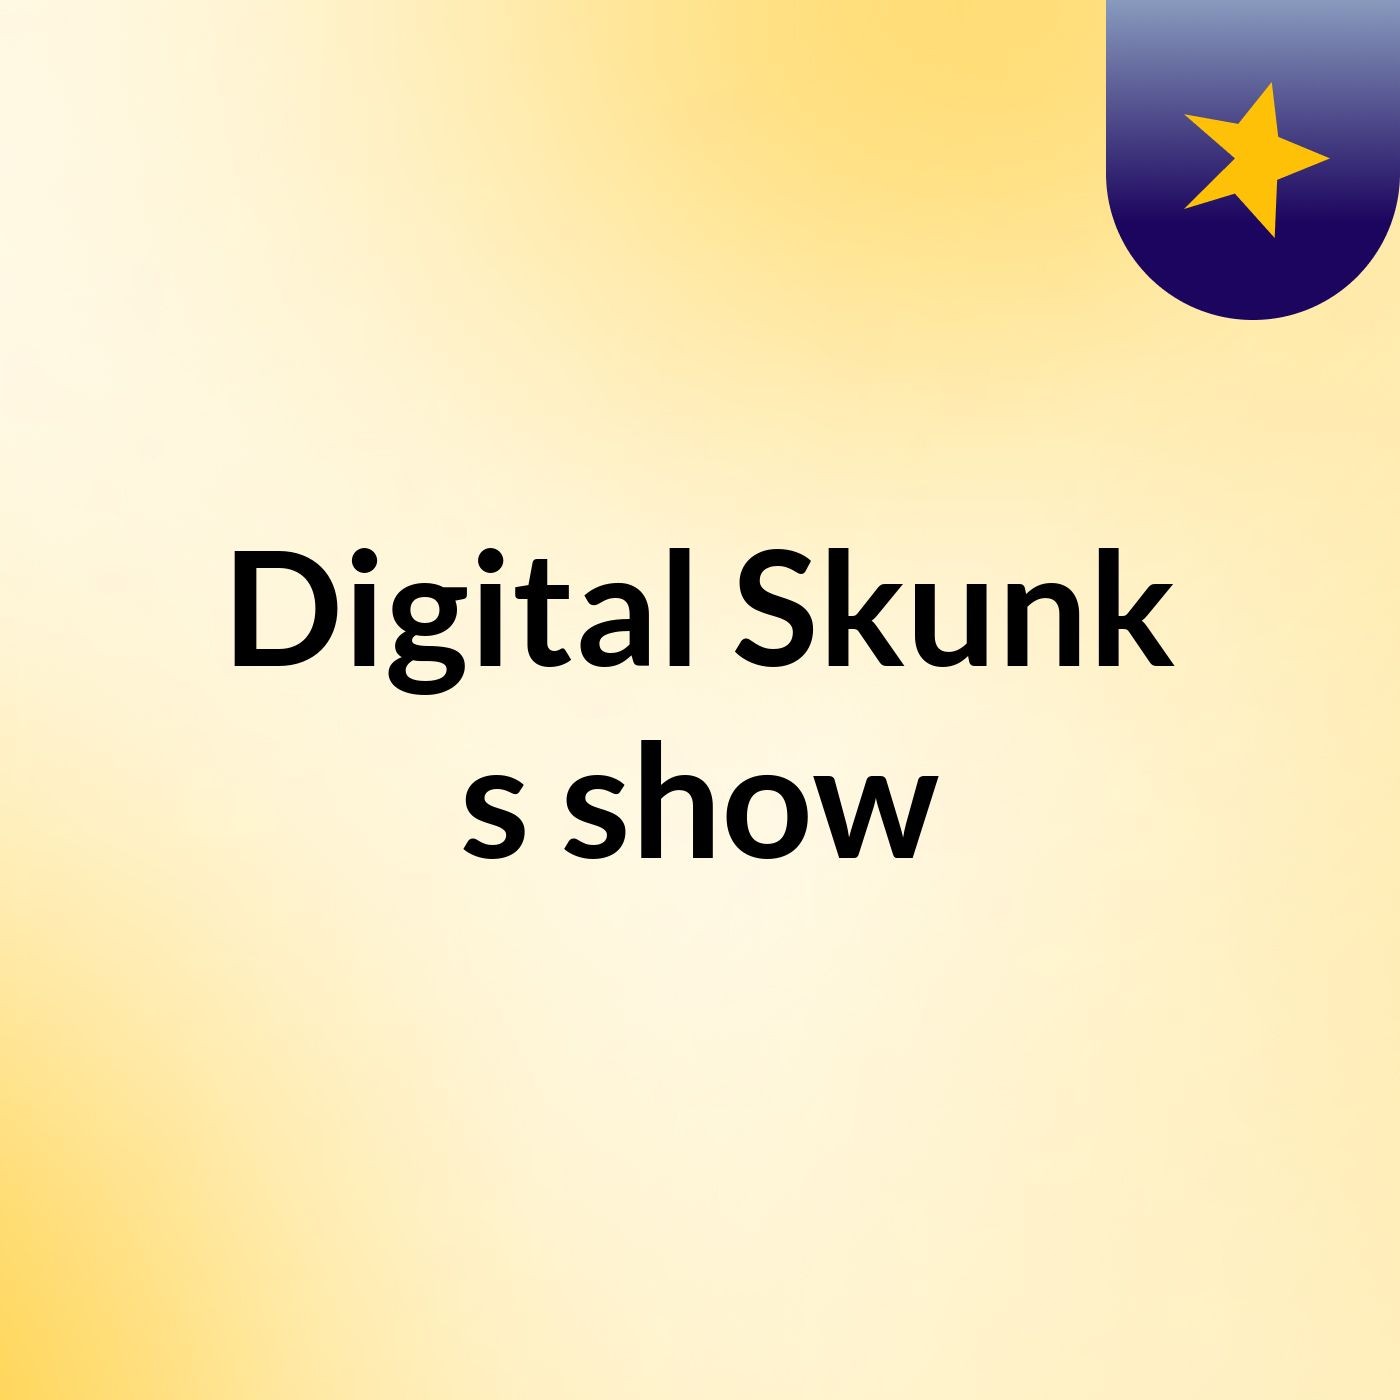 Digital Skunk's show